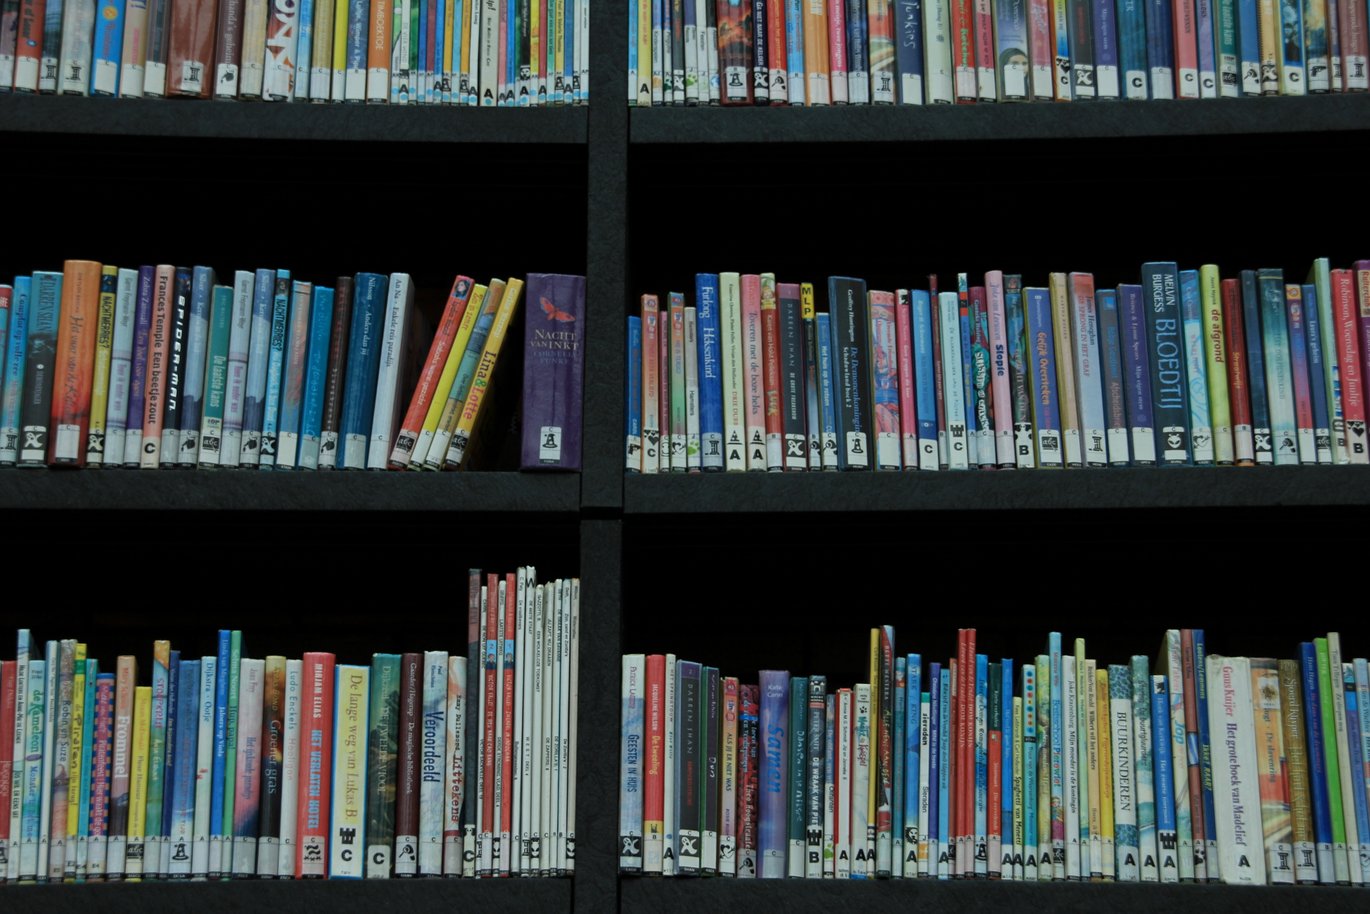 Universitetets 22 biblioteker er blevet samlet i en ny enhed. En af dem er AU Library, Psykiatri. Det er Aarhus Universitet og Statsbiblioteket, som har lanceret det nye Aarhus University Library.